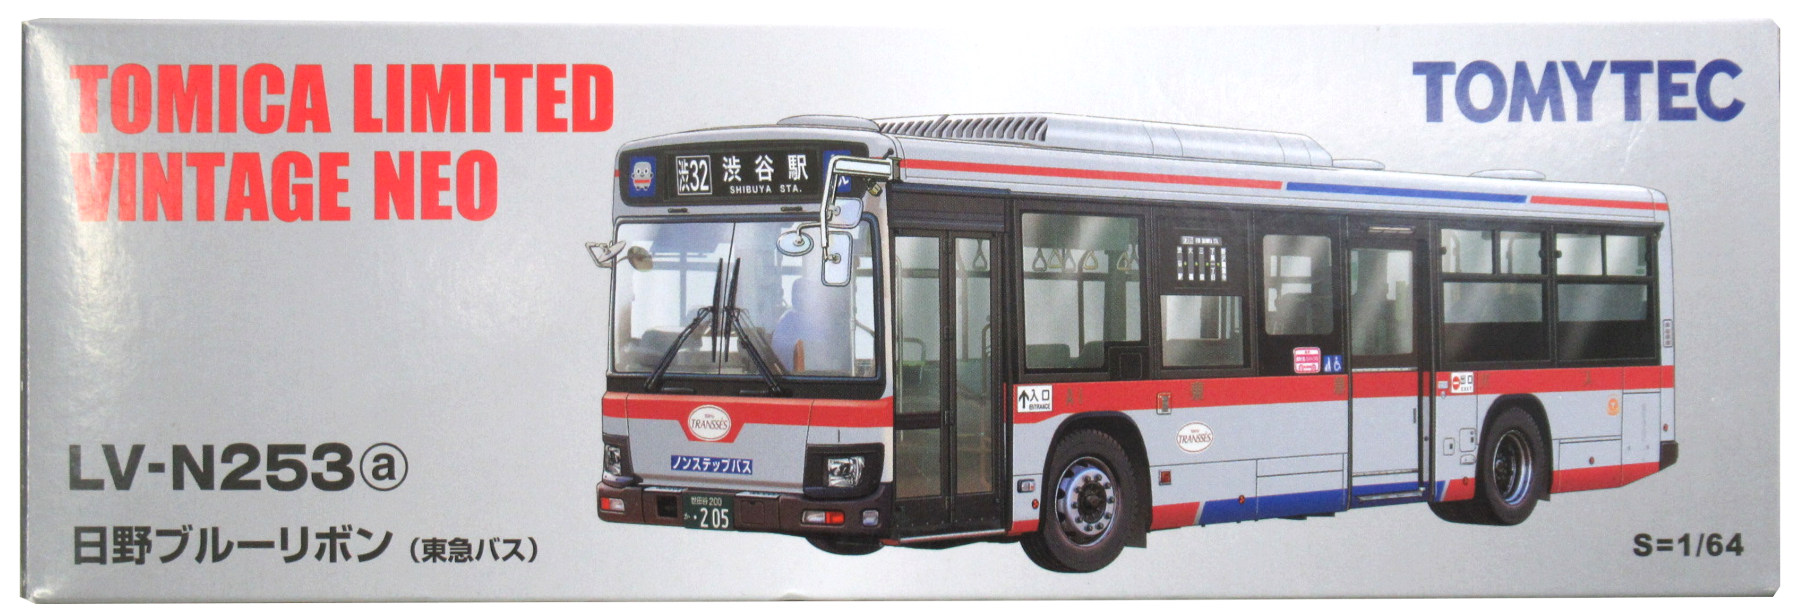 早い者勝ち】LV-N253 東急バス - macaluminio.com